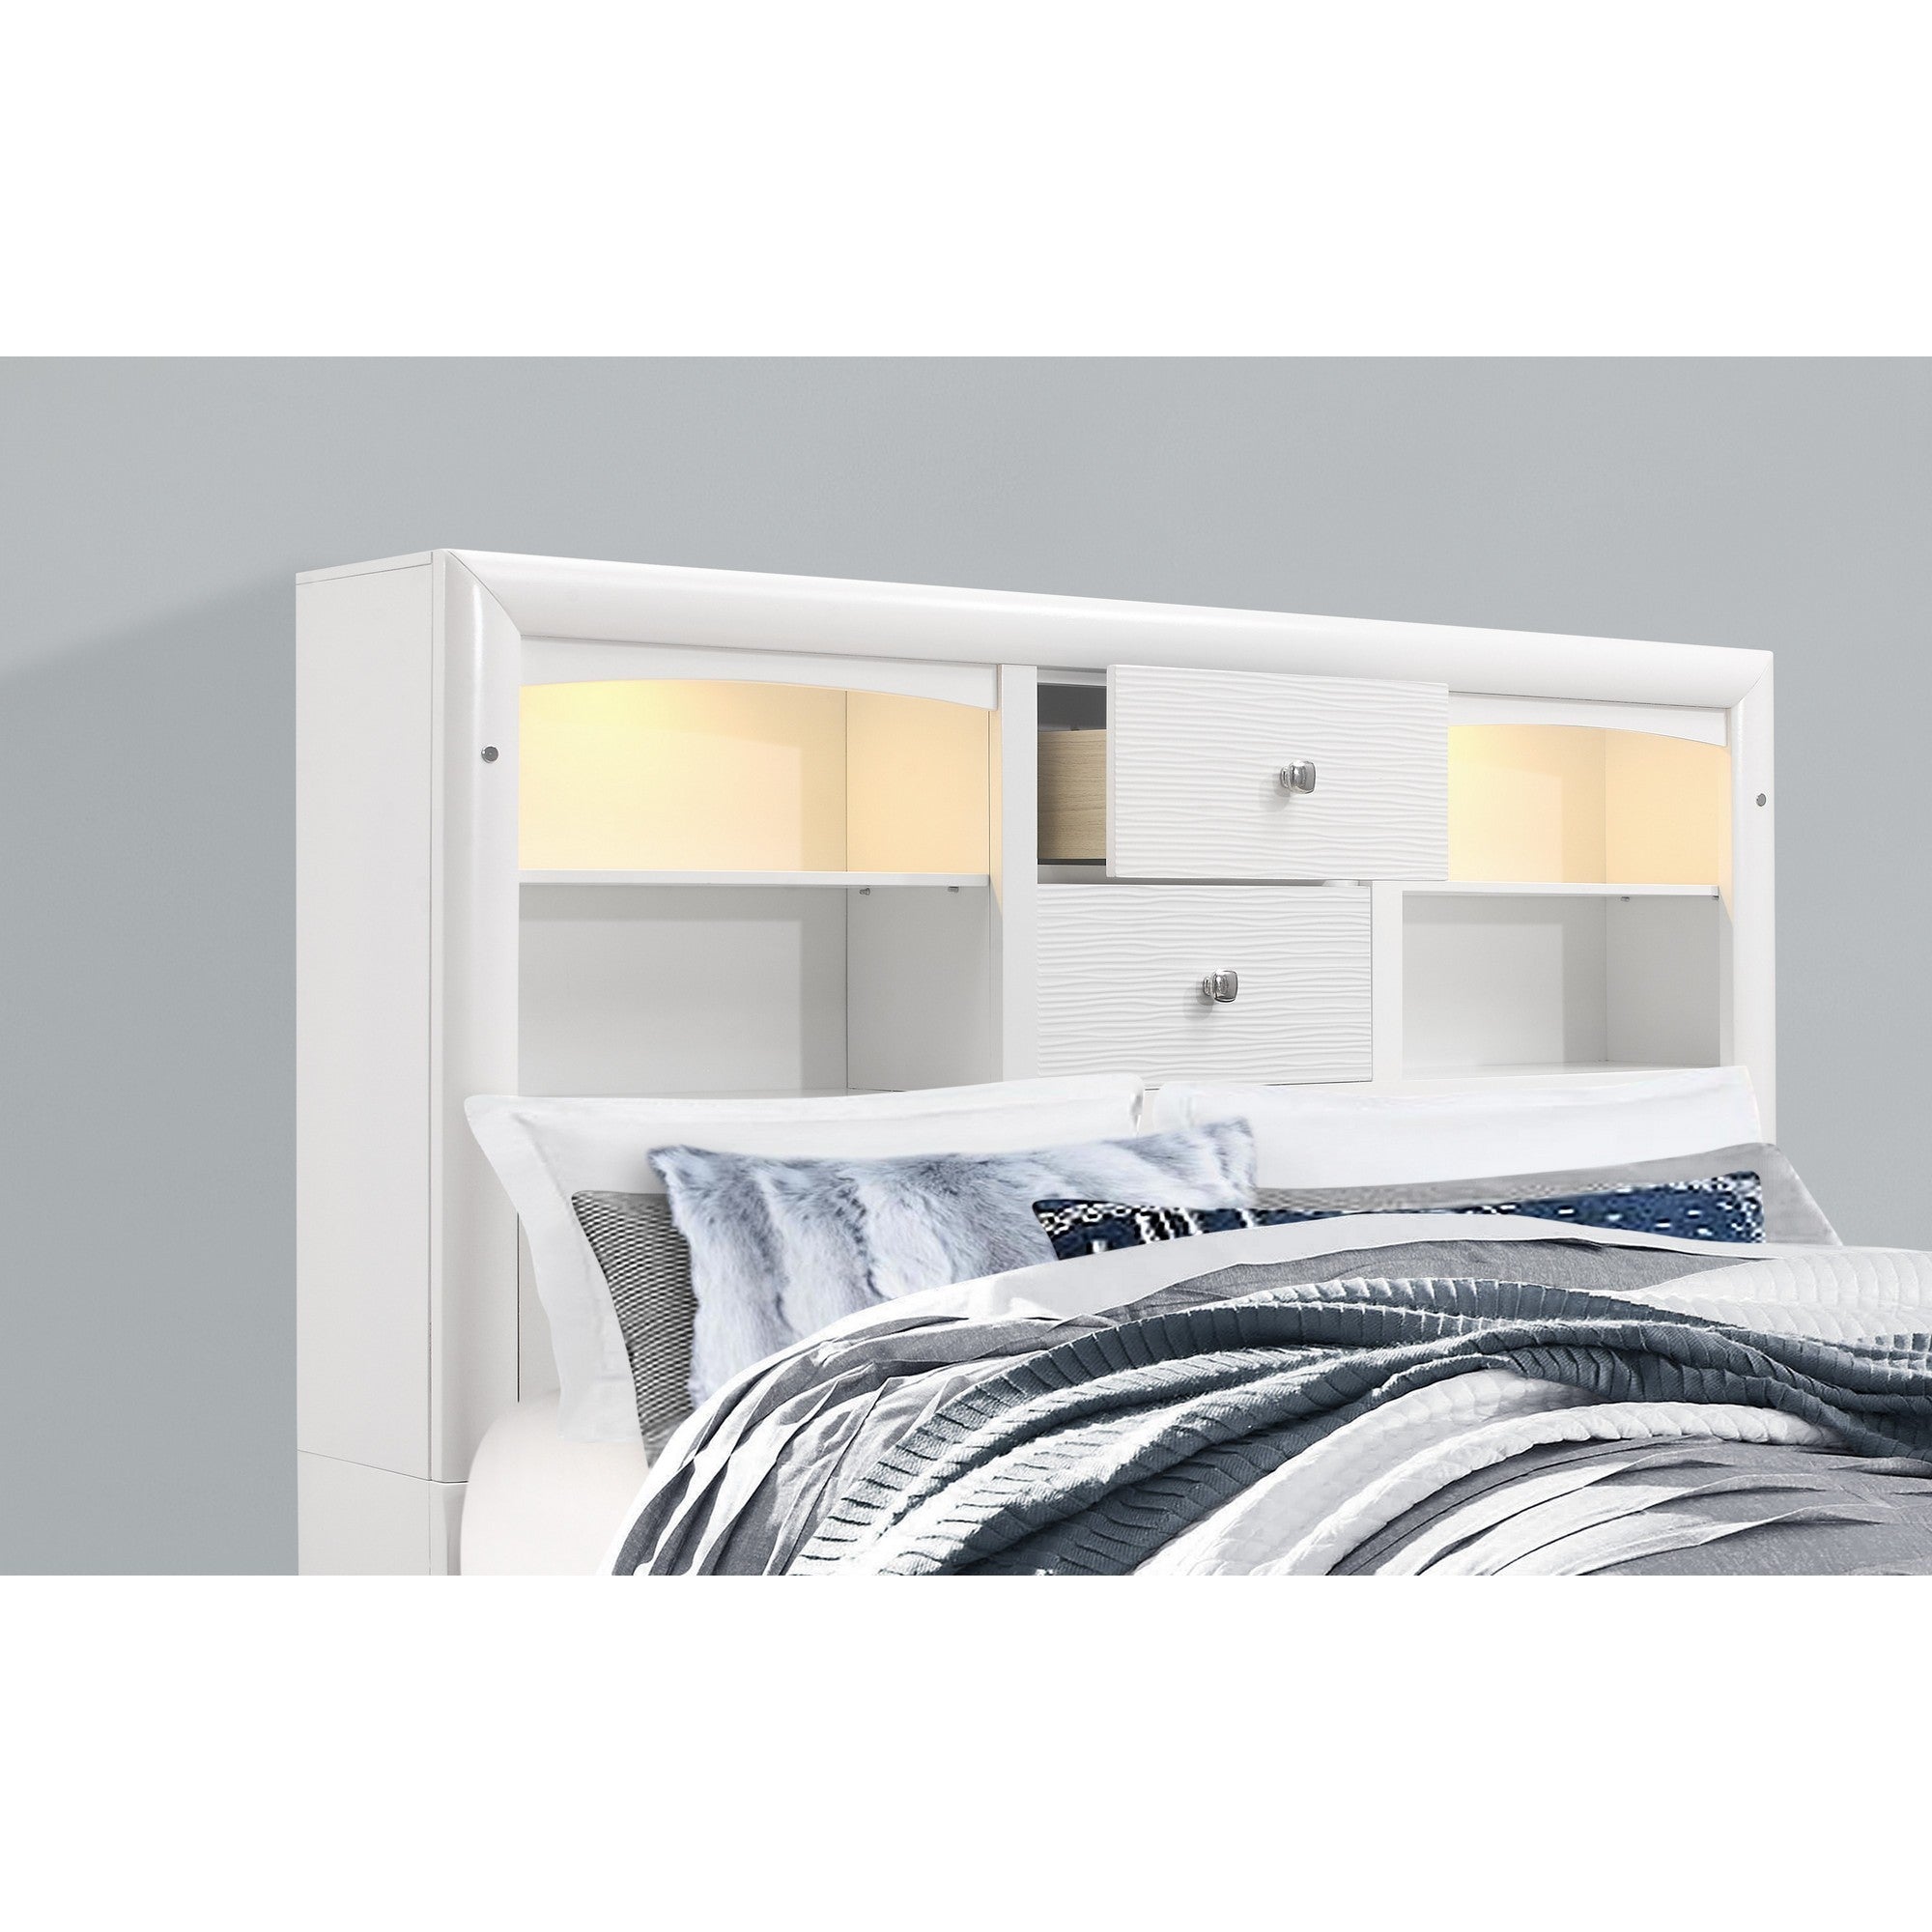 White Rubberwood Full Bed with bookshelves Headboard  LED lightning  6 Drawers Default Title